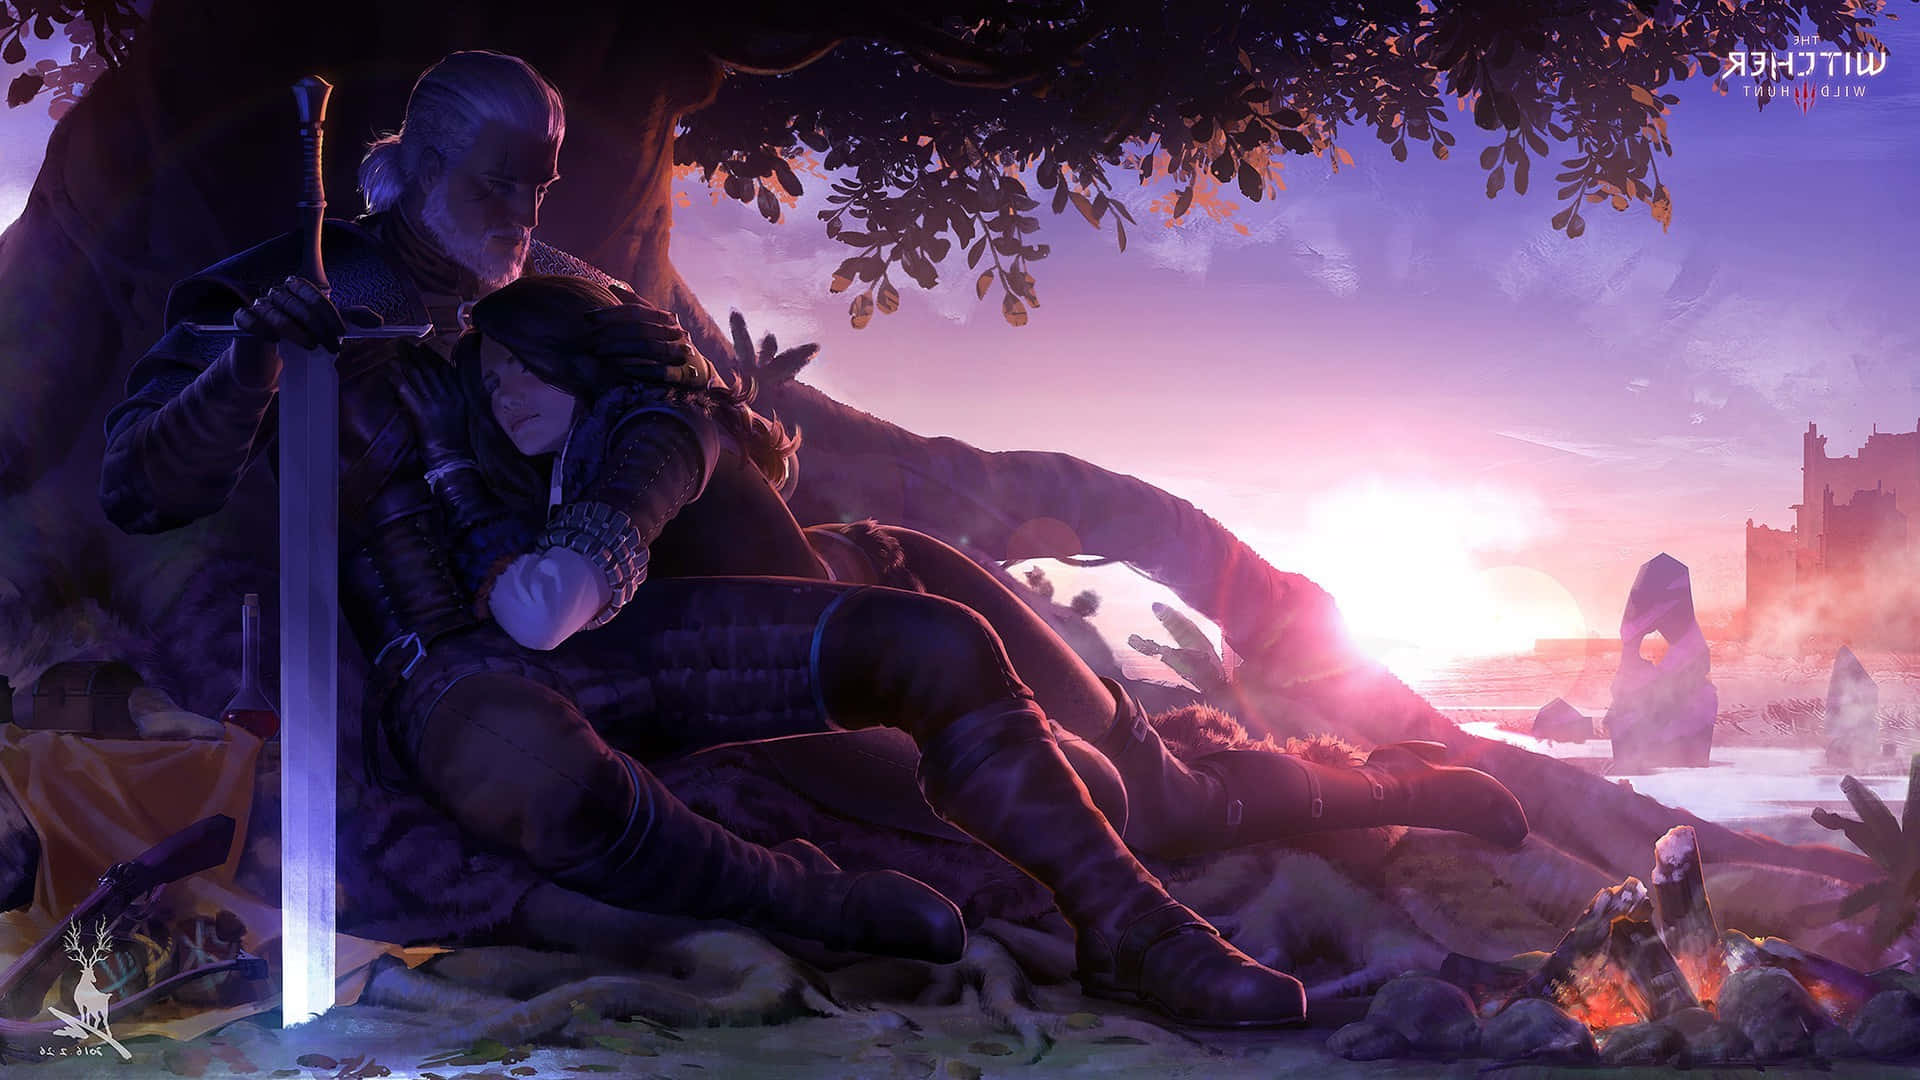 Geraltdi Rivia In Una Scena Di Battaglia De The Witcher.